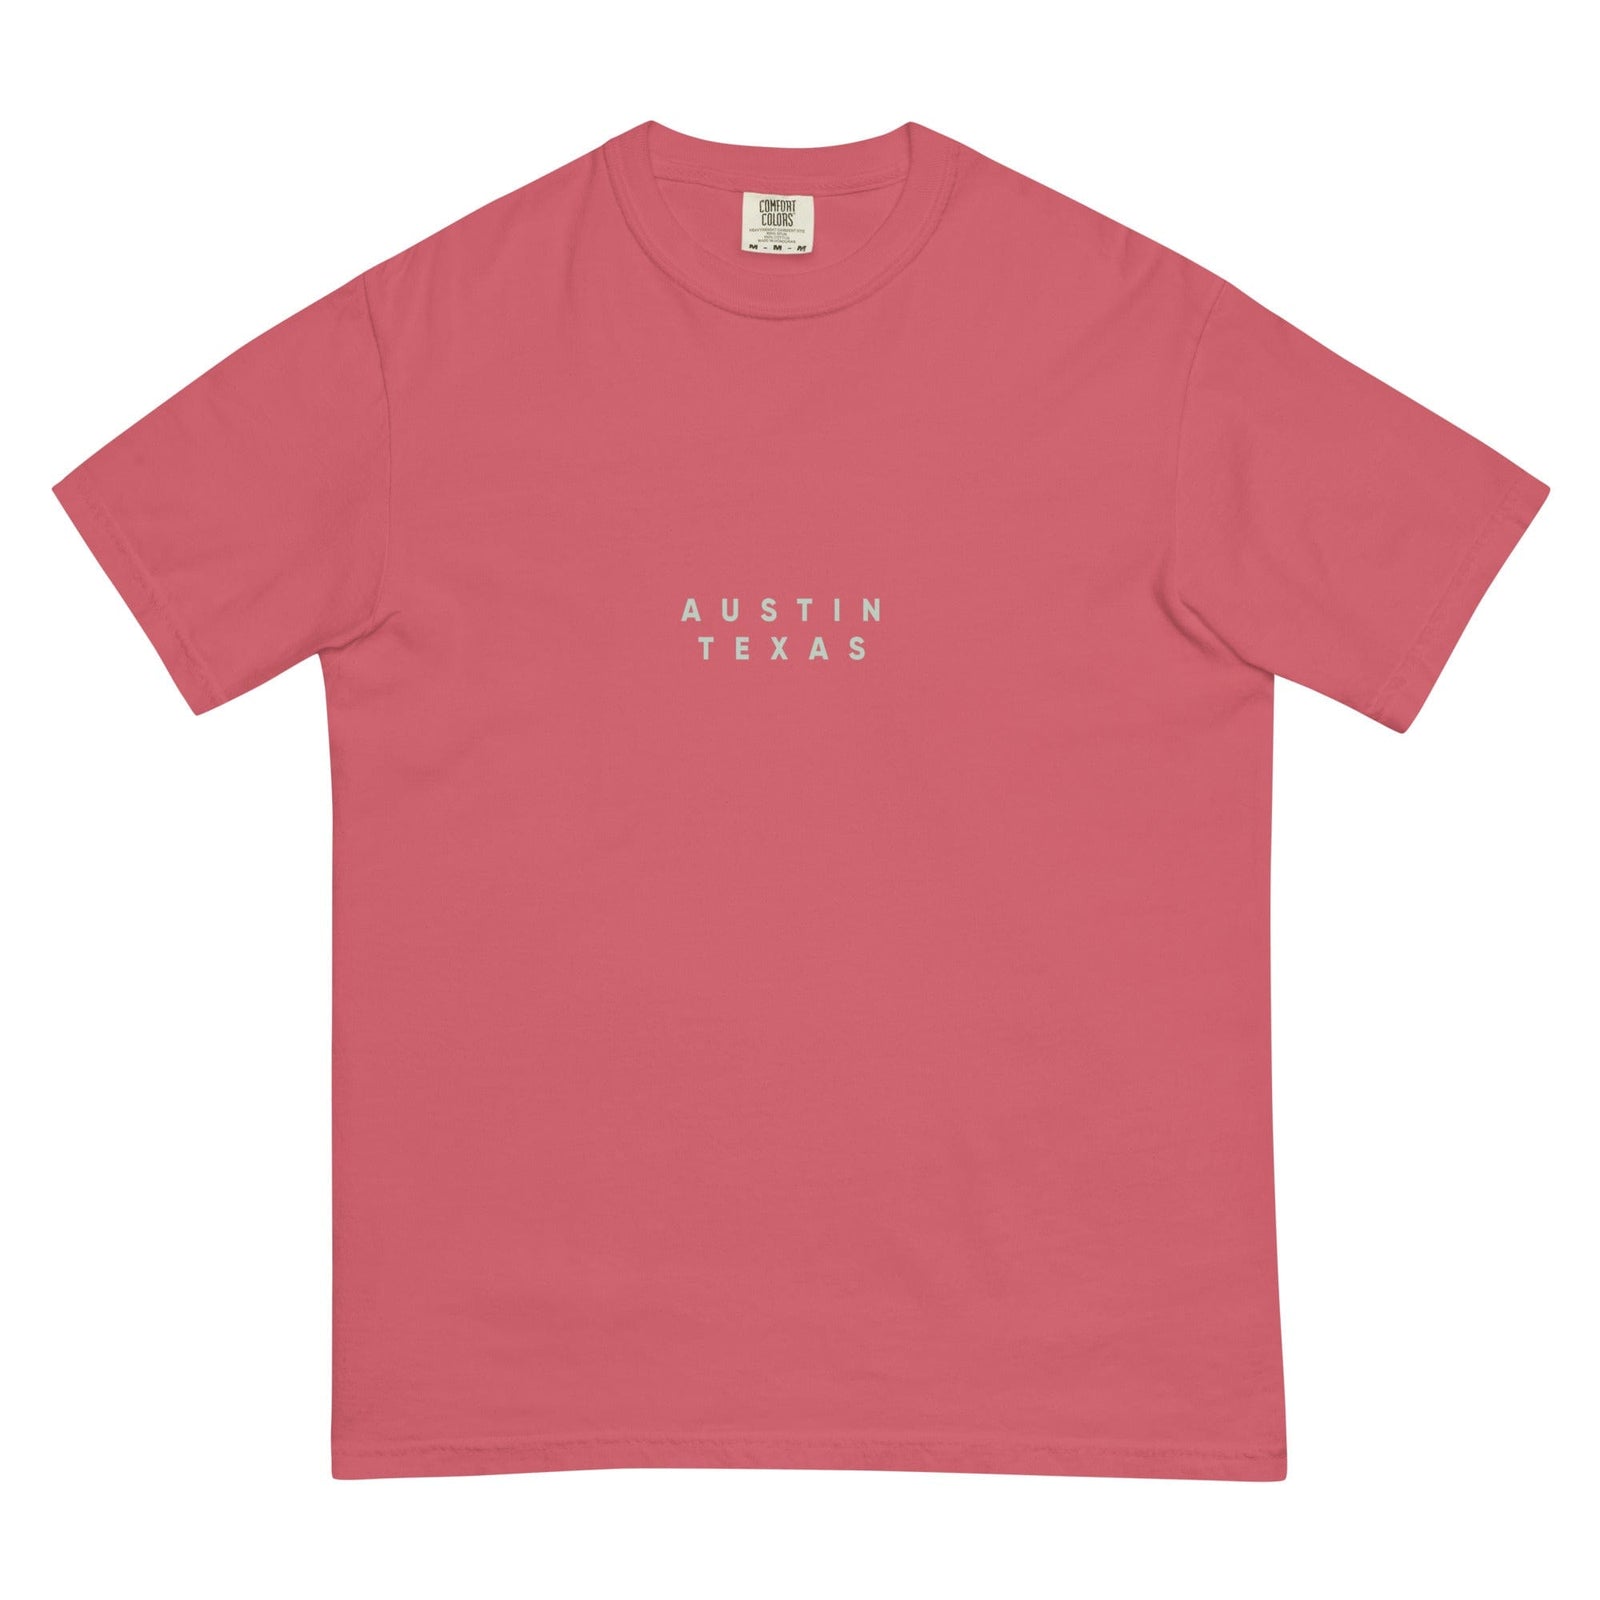 City Shirt Co Austin Comfort Colors T-Shirt Watermelon / S